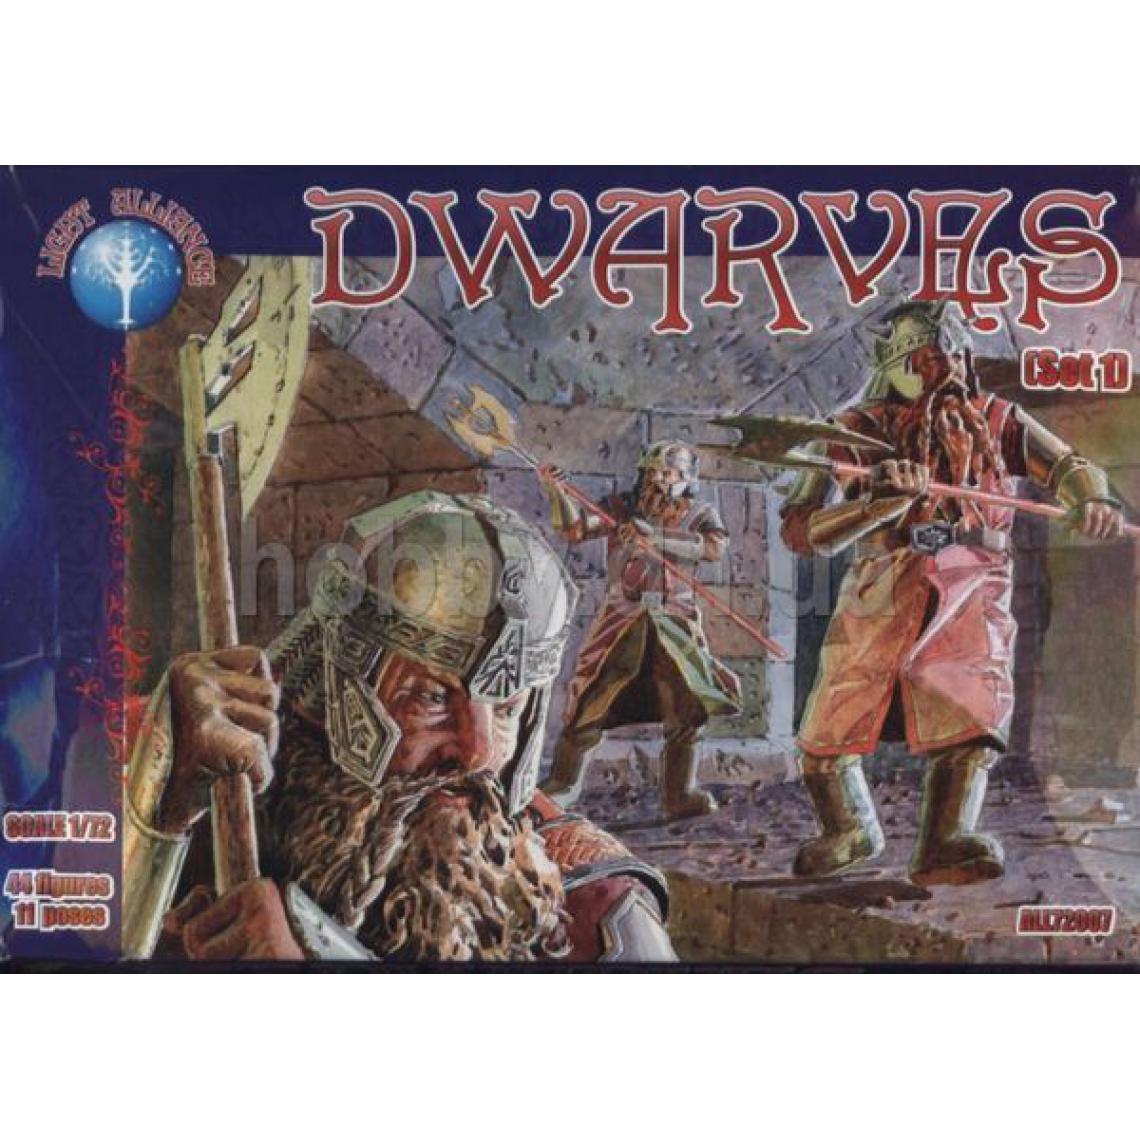 Alliance - Dwarves, set 1 - 1:72e - ALLIANCE - Accessoires et pièces